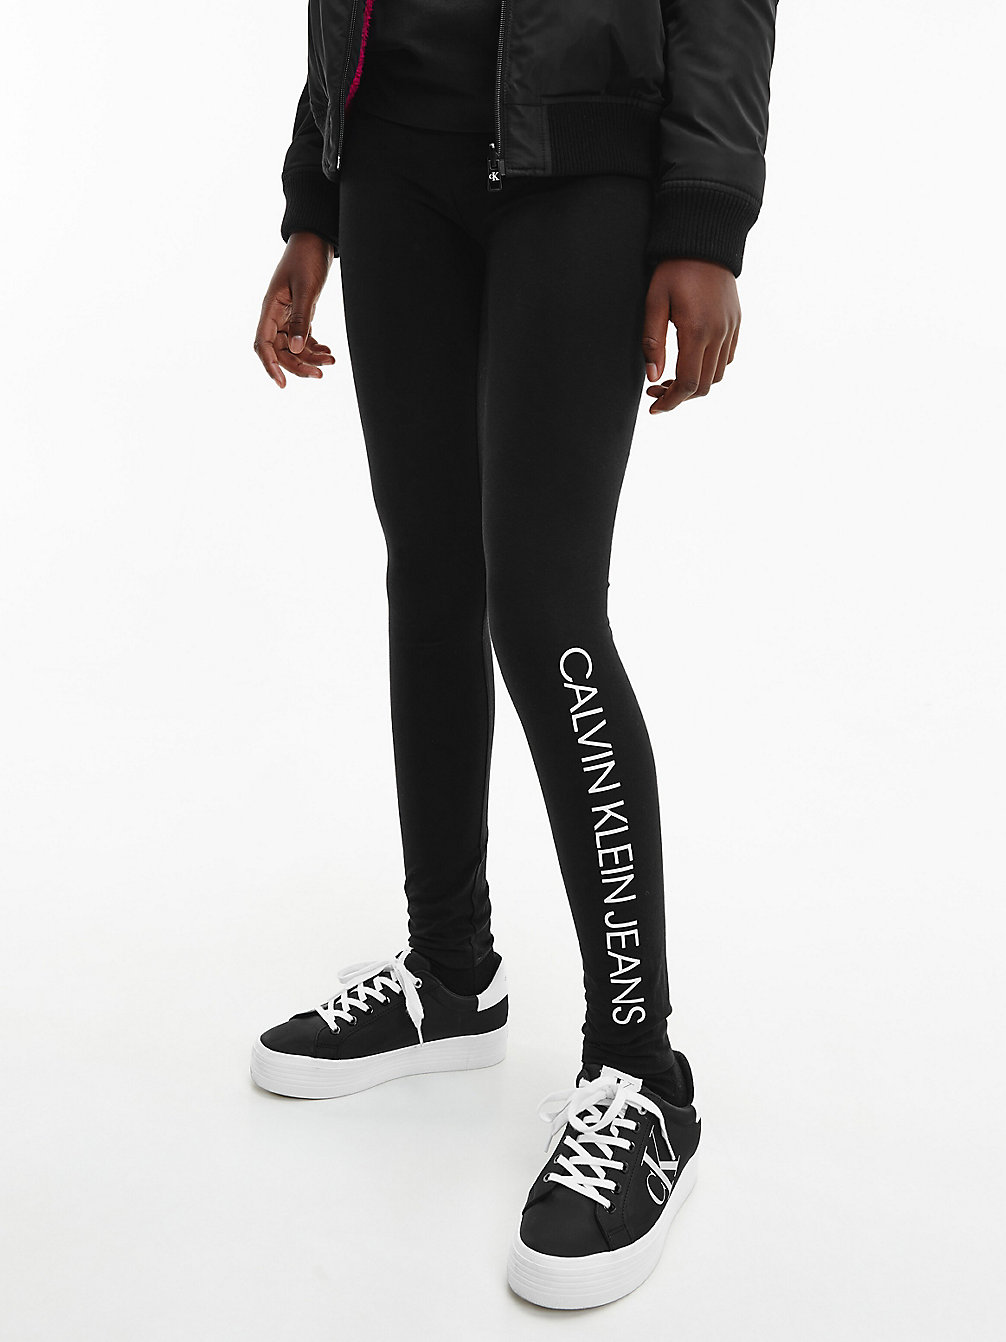 CK BLACK > Logo-Leggings > undefined girls - Calvin Klein